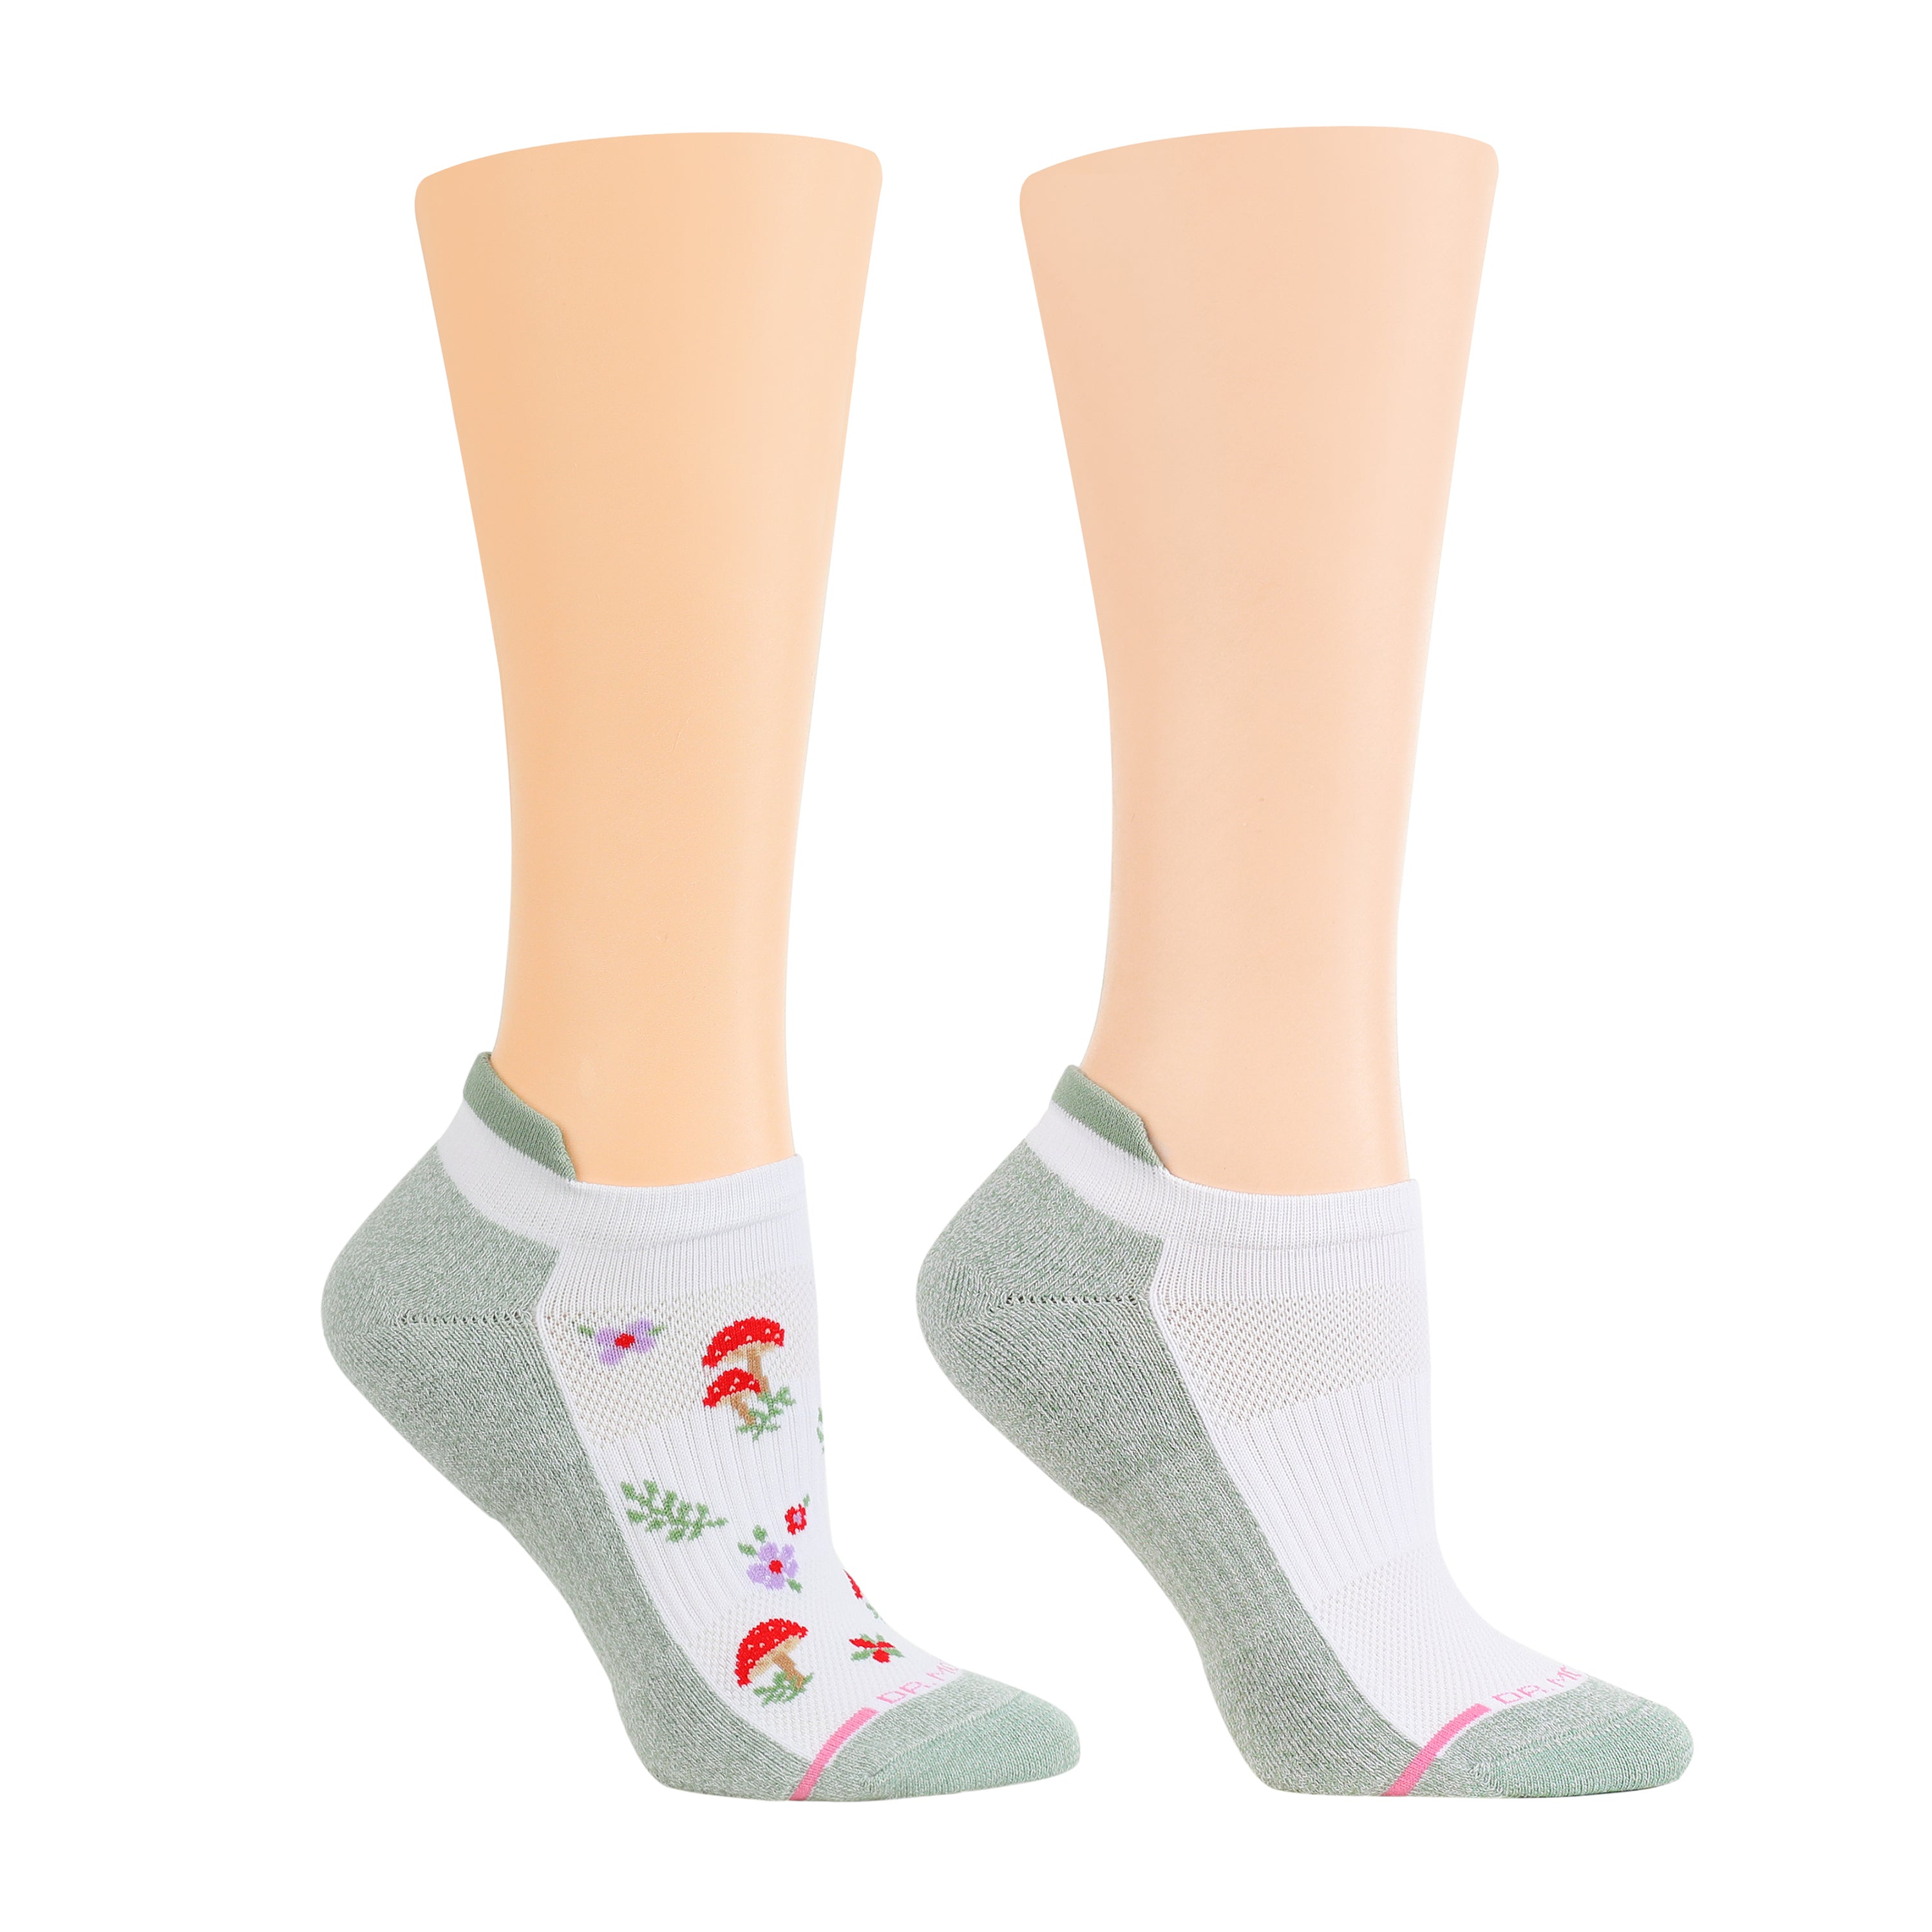 Mushroom Floral | Ankle Compression Socks For Women